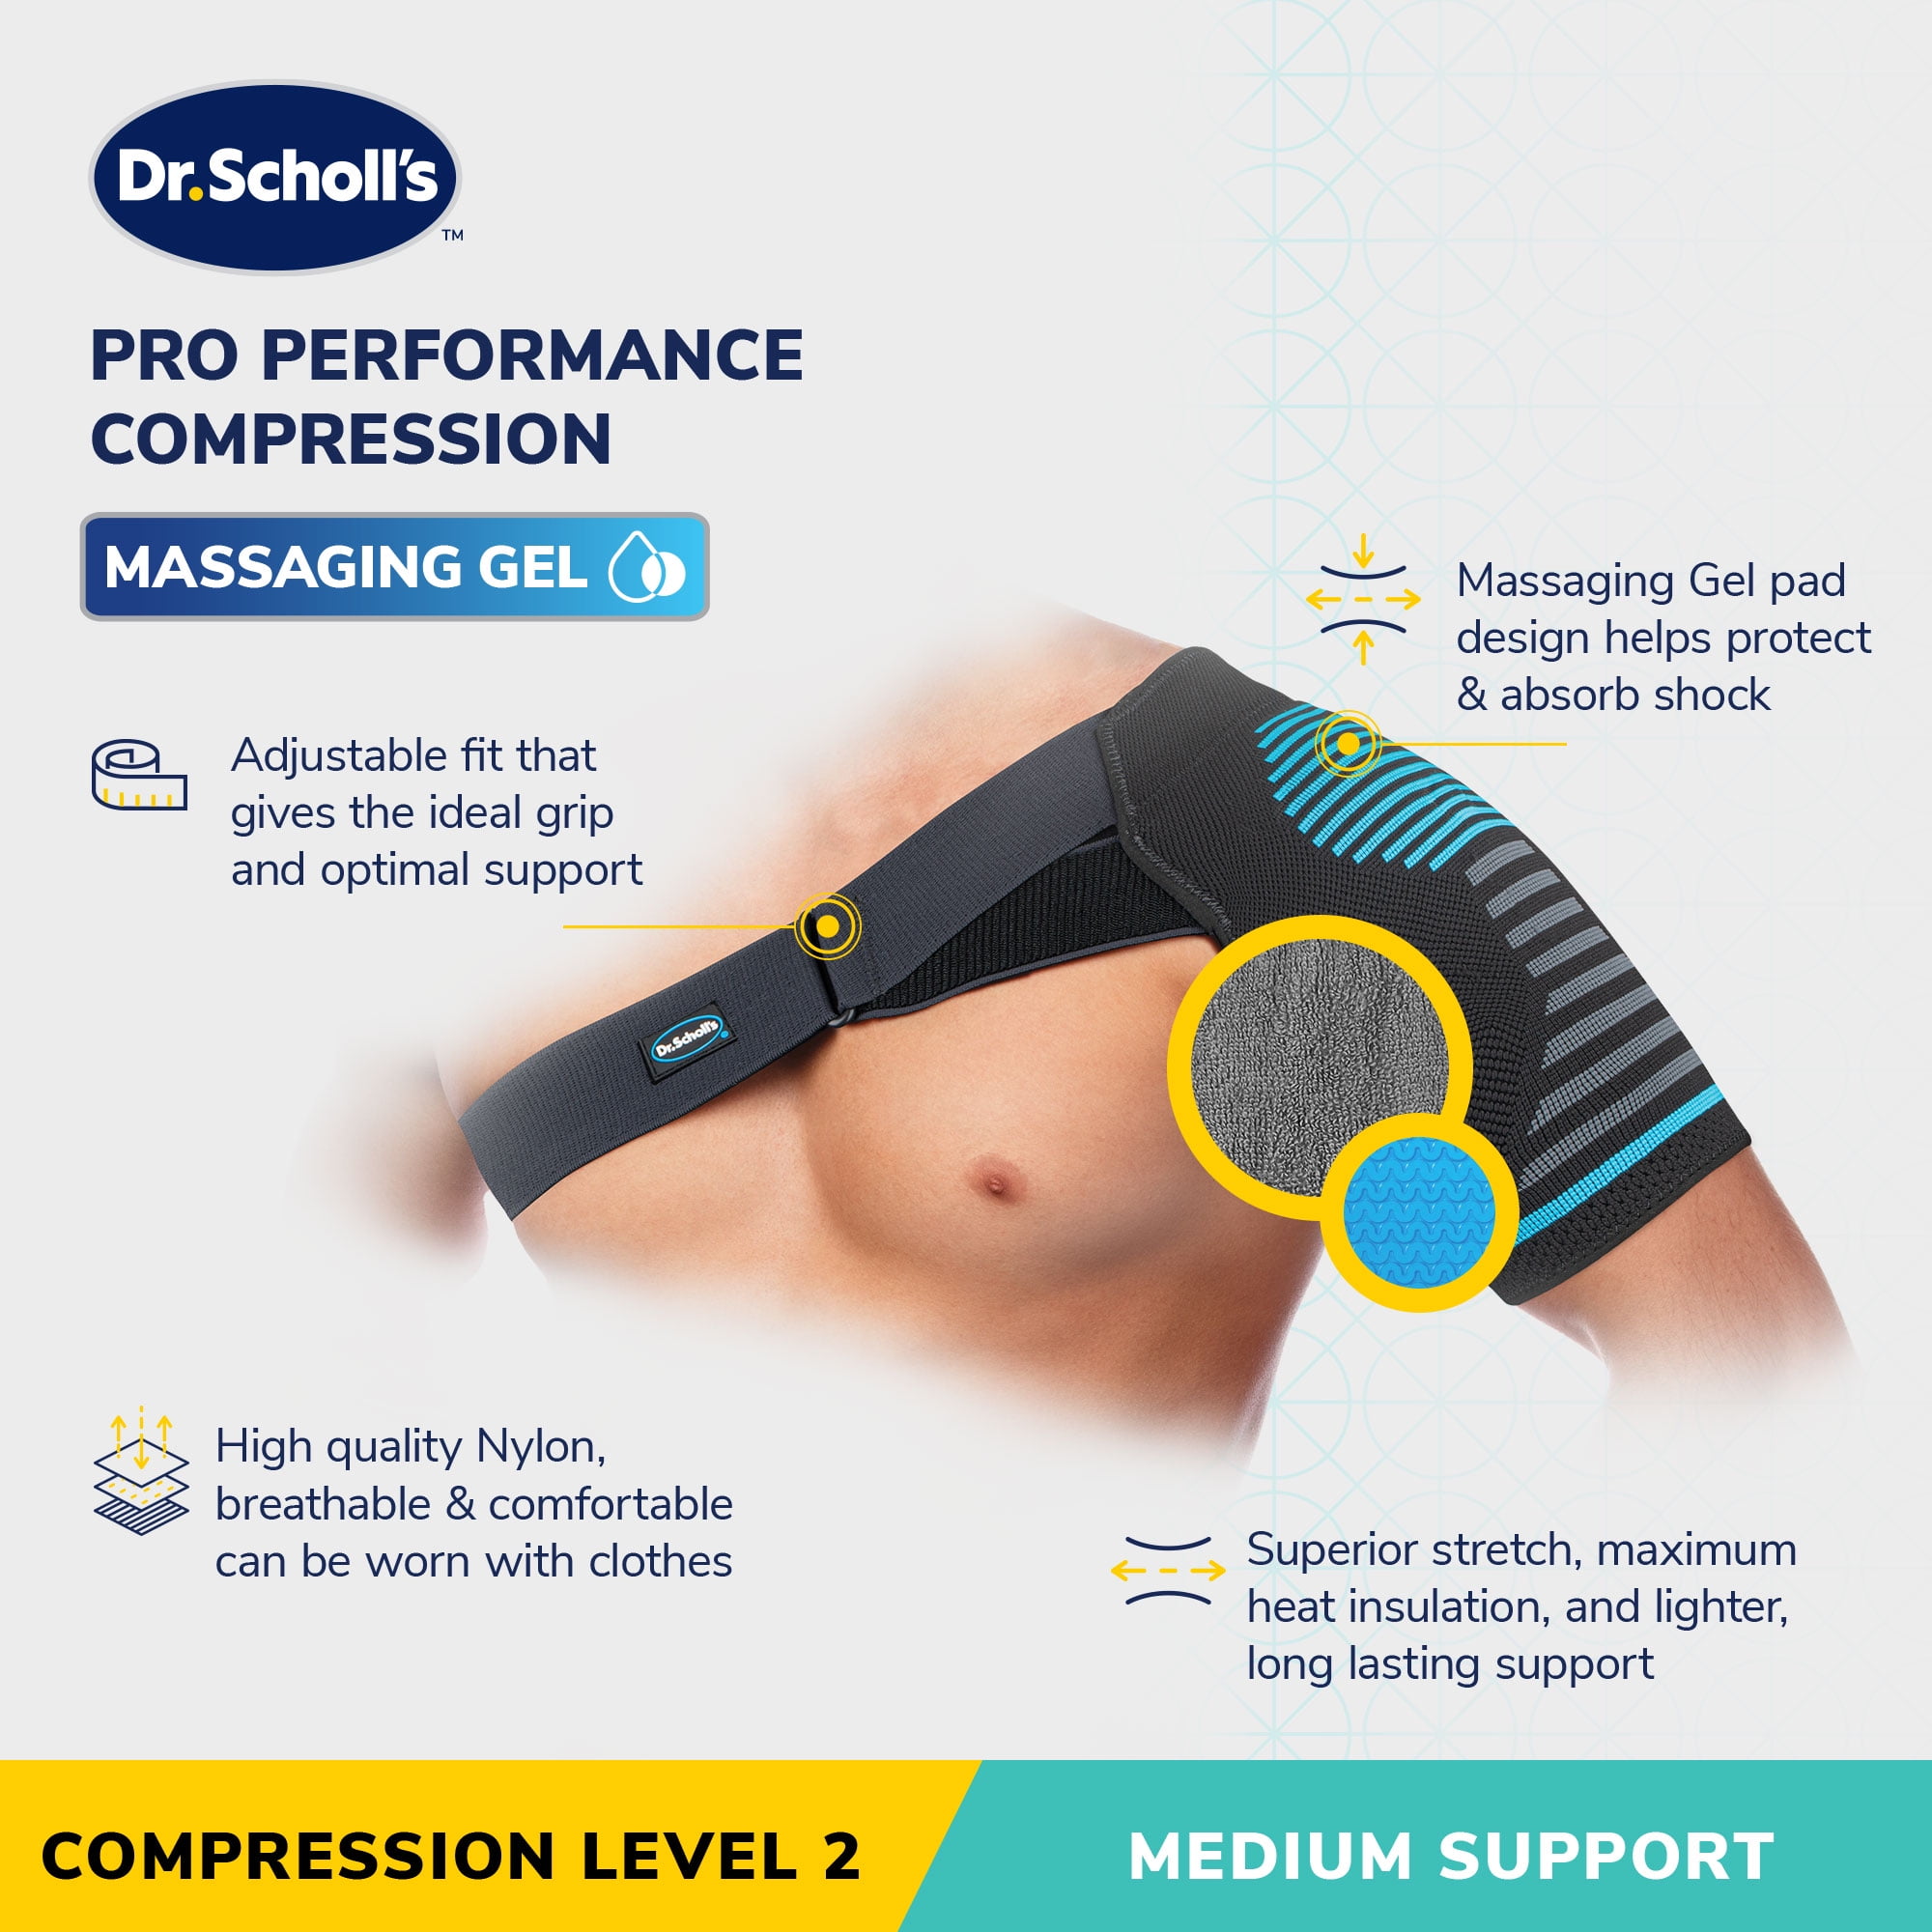 Dr. Scholl's Compression Shoulder Support with Massaging Gel